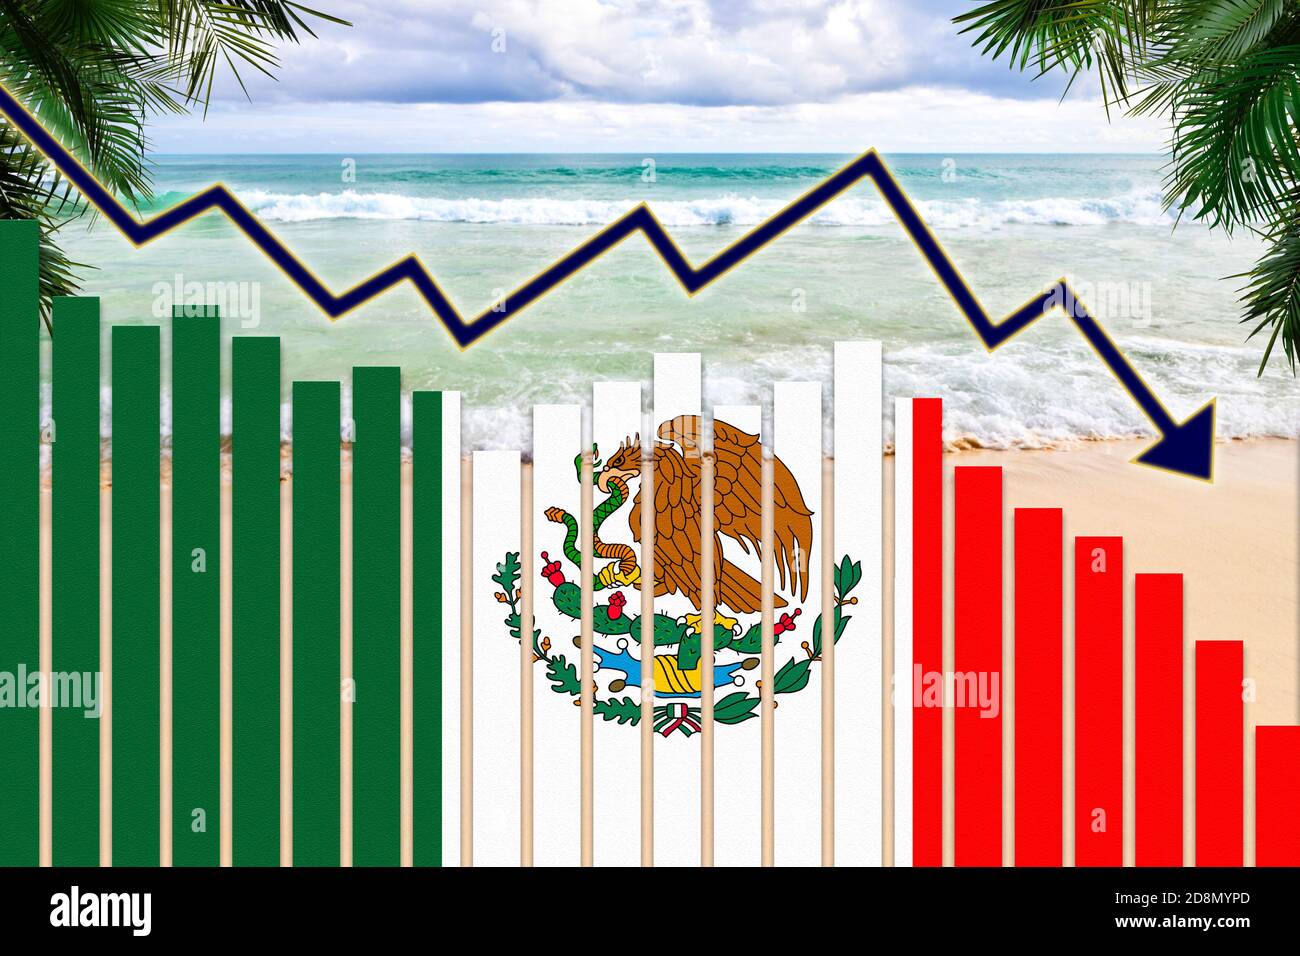 COVID-19 impatto pandemico del coronavirus sul concetto di industria turistica del Messico che mostra lo sfondo della spiaggia con la bandiera messicana sulla barra carte tendenza in calo. Foto Stock